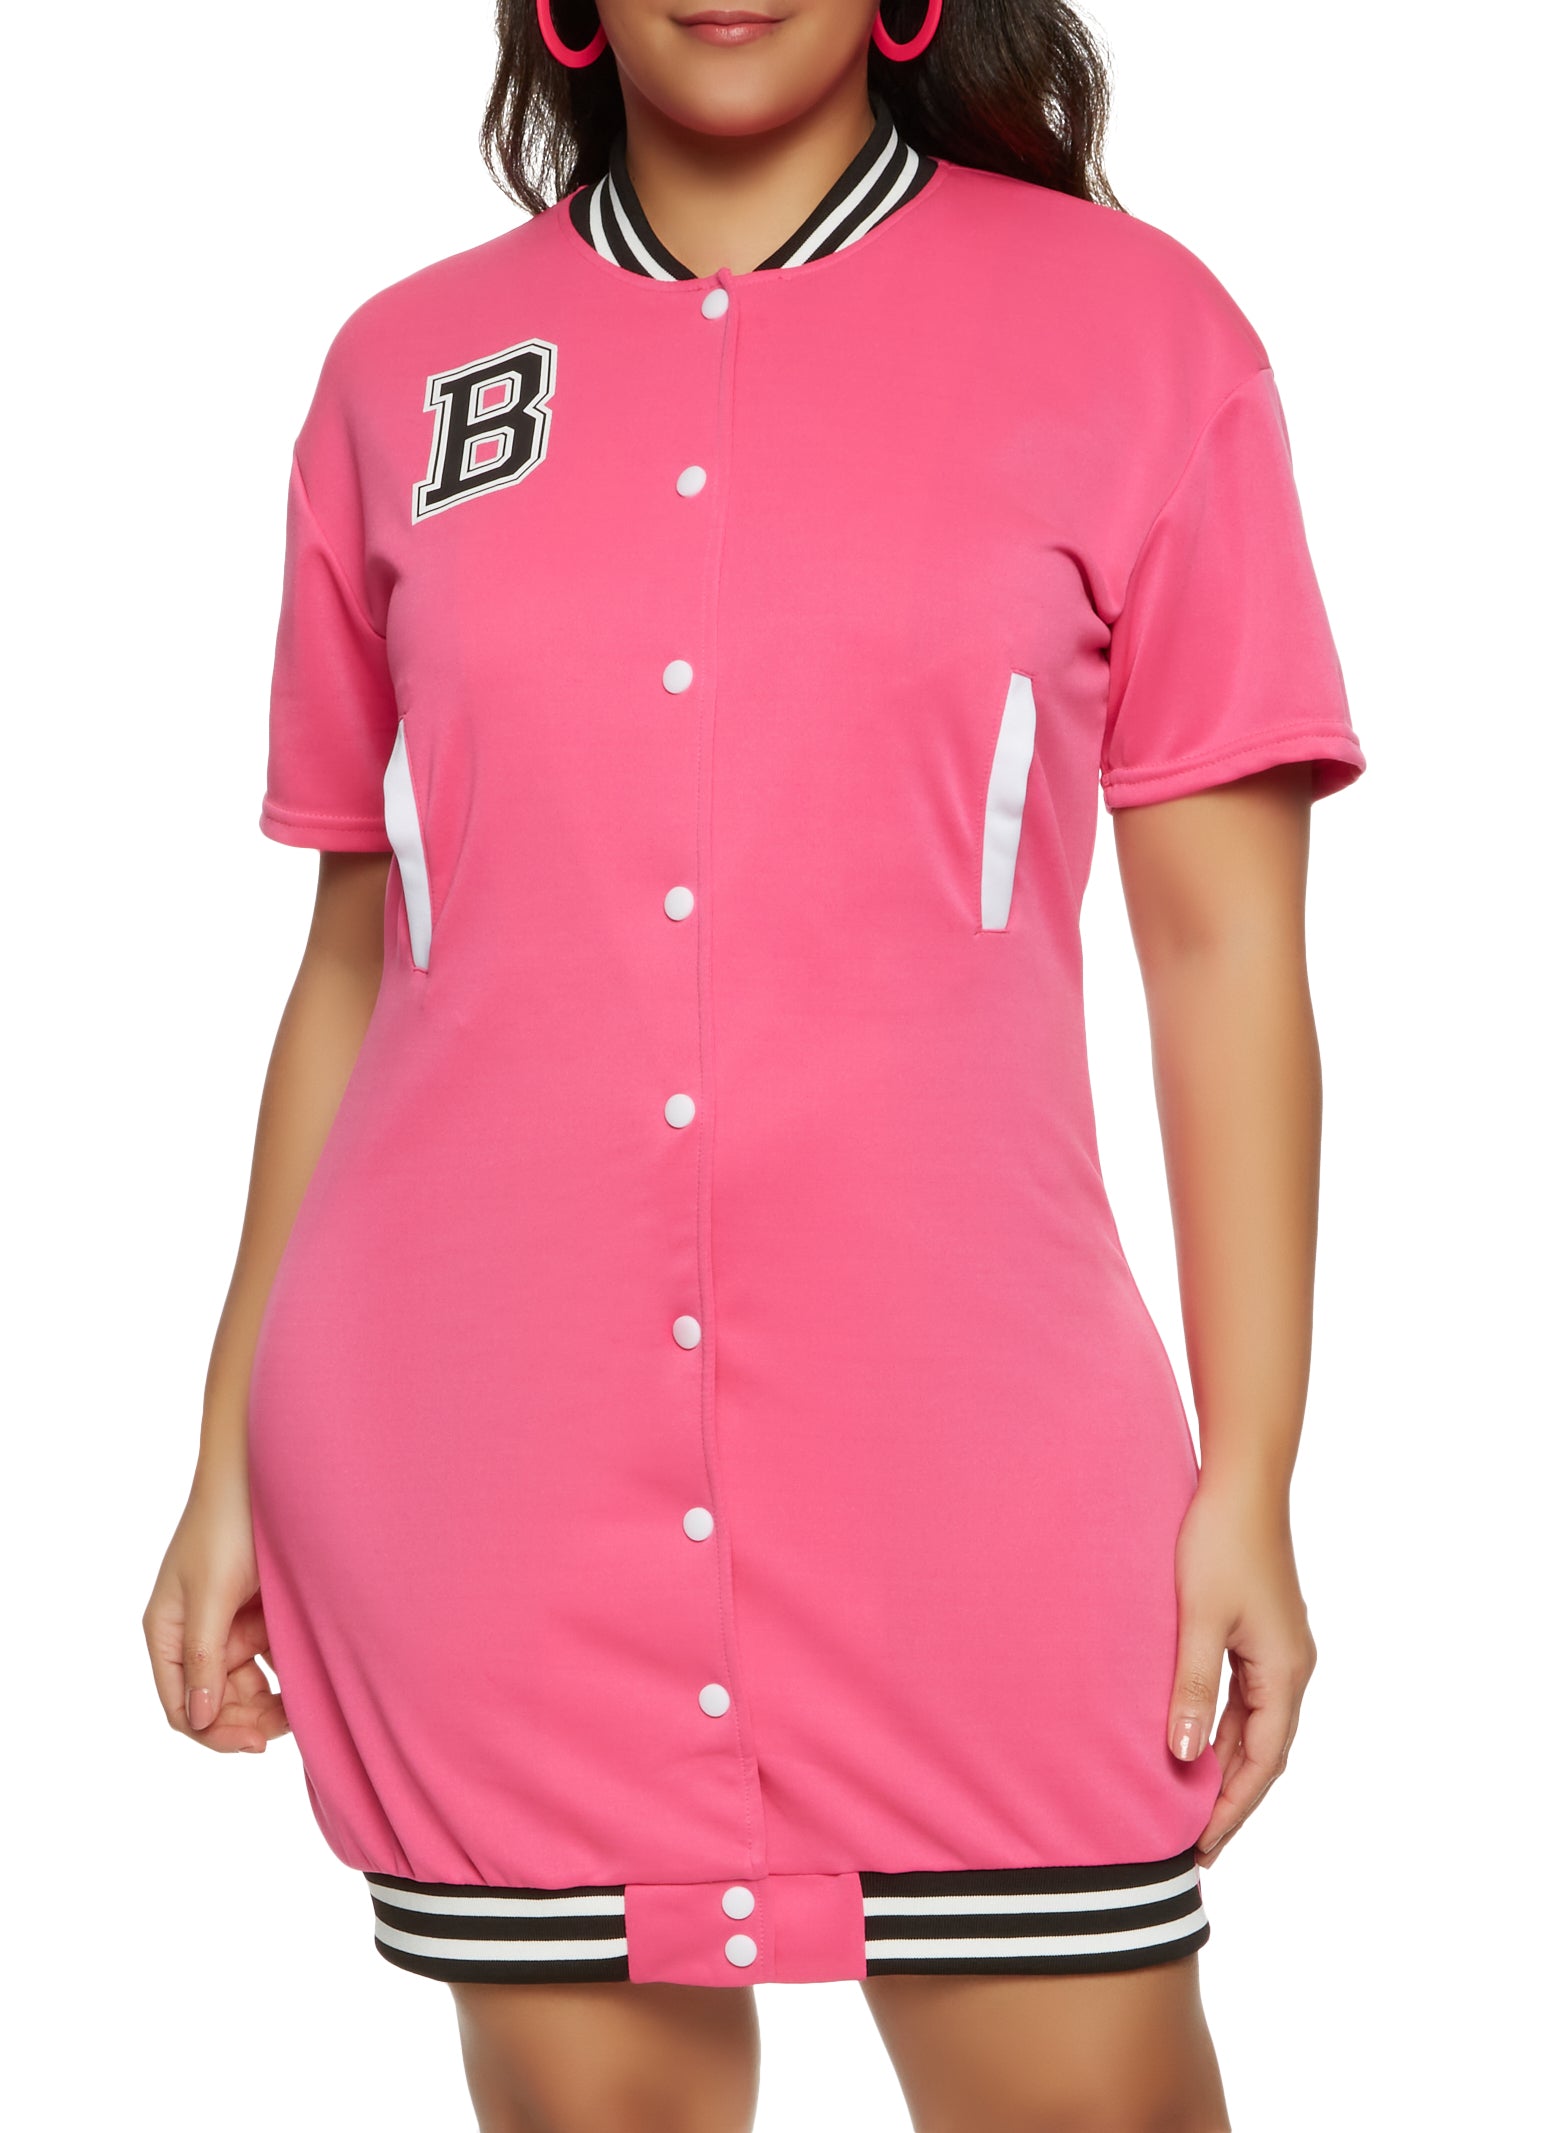 Womens Plus Size Button Front Baseball Jersey Dress, Fuchsia, Size 1x | Rainbow Shops